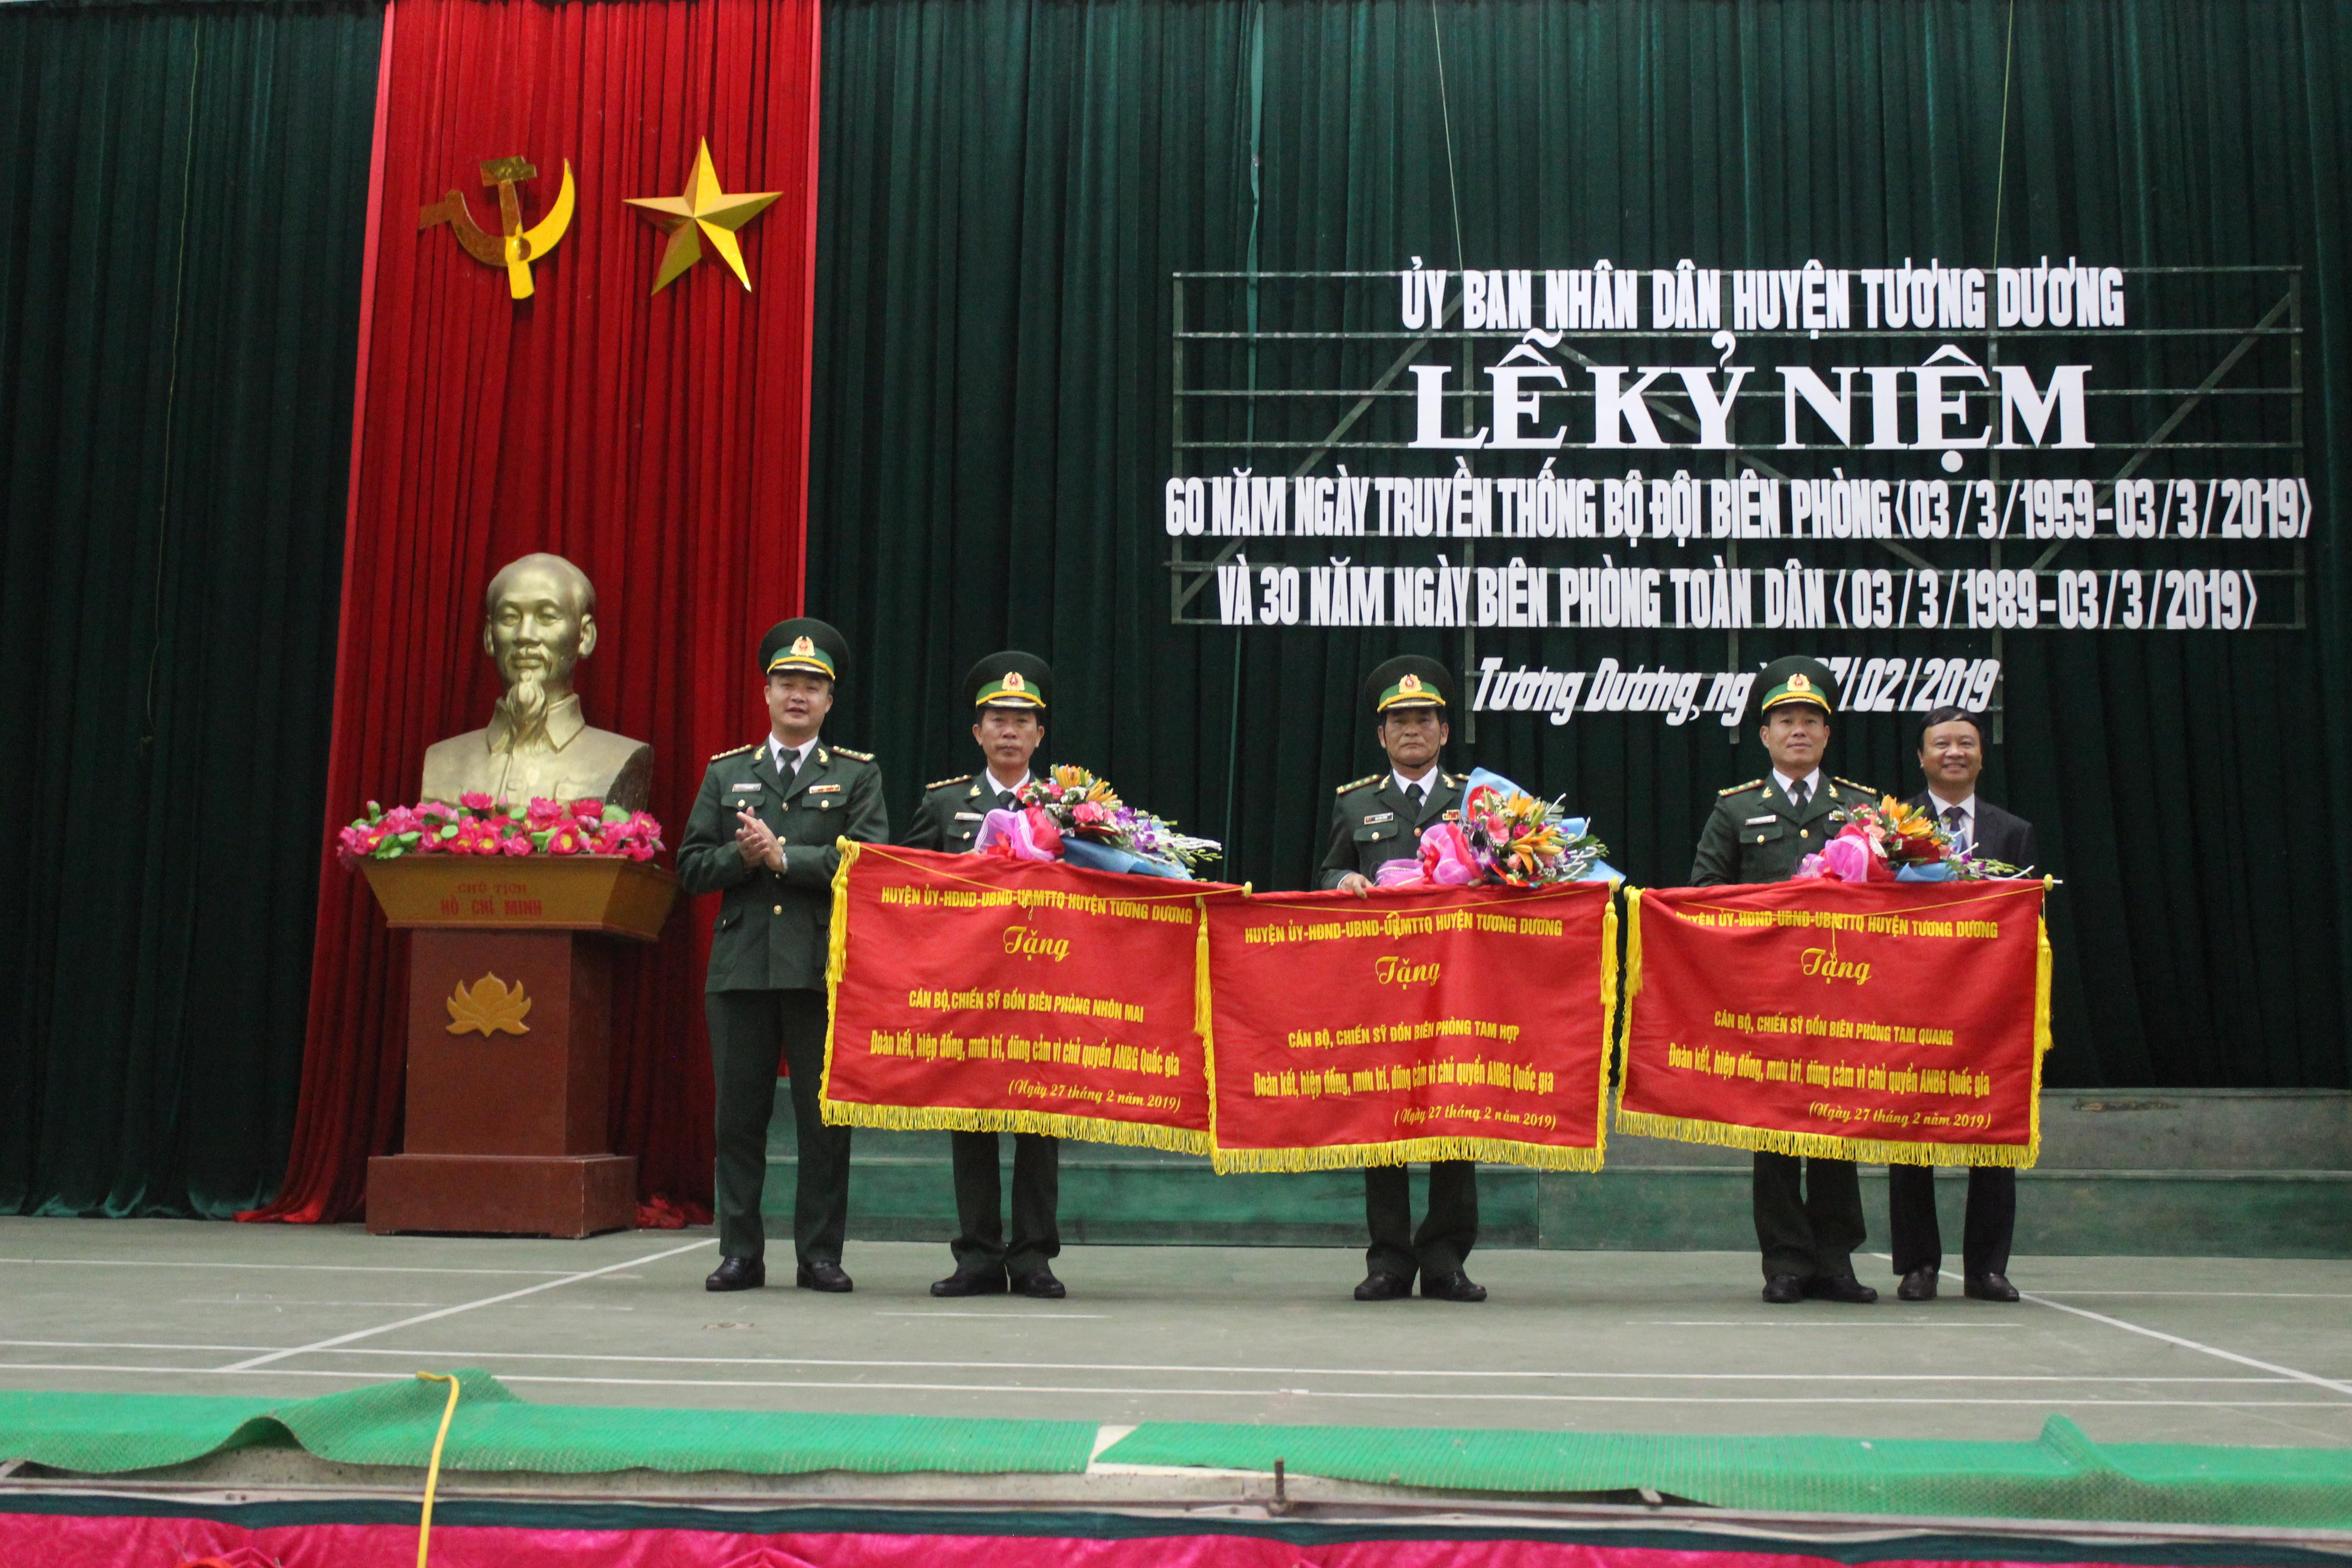 3 Đồn biên phòng là Tam Hợp, Tam Quang Và Nhôn Mai vinh dự được nhận bức trướng của Đảng bộ, UBND huyện Tương Dương trao tặng